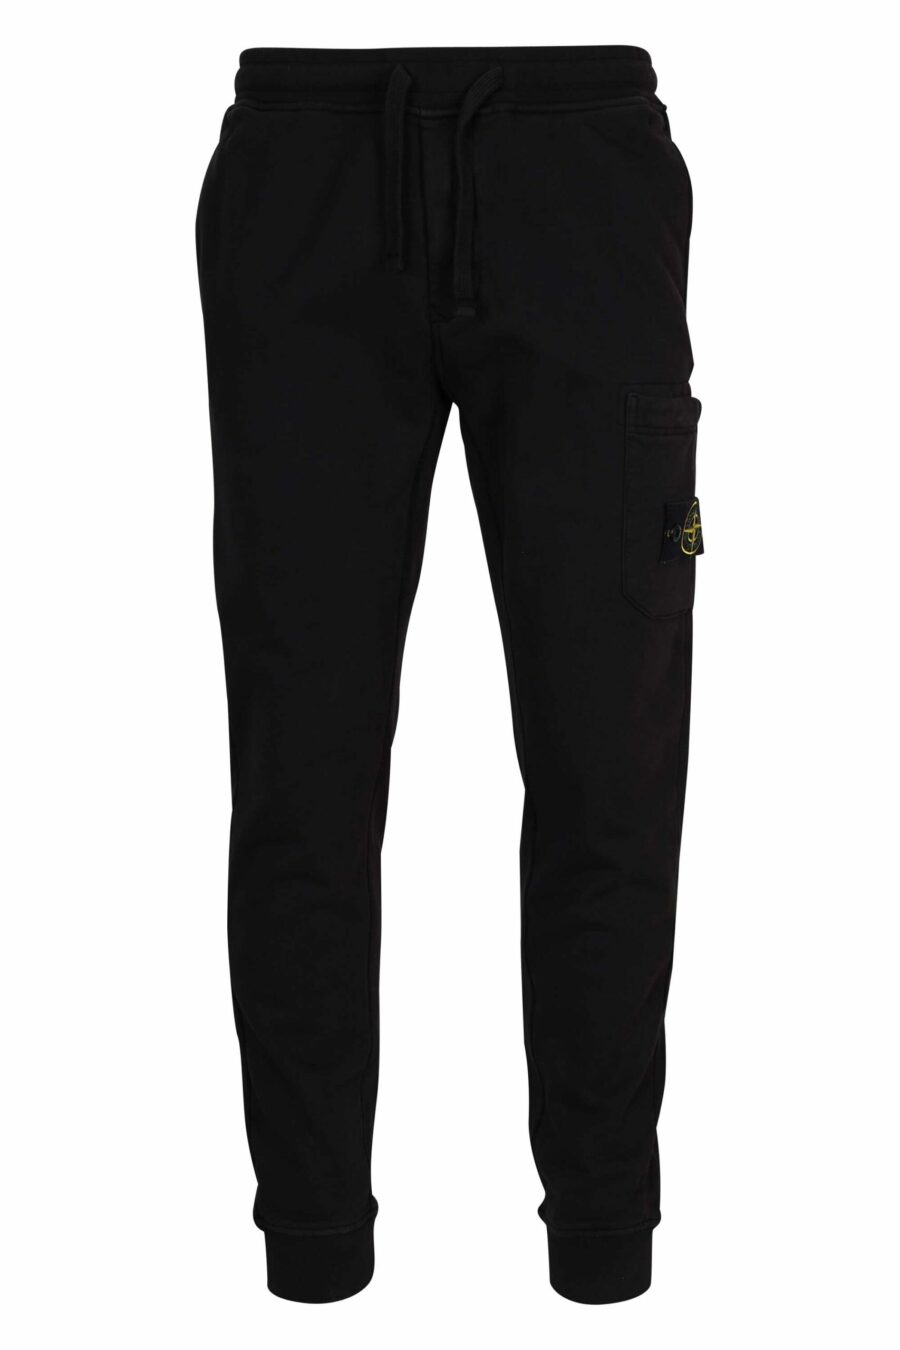 Pantalón de chándal negro con logo parche brújula - 8052572852862 scaled